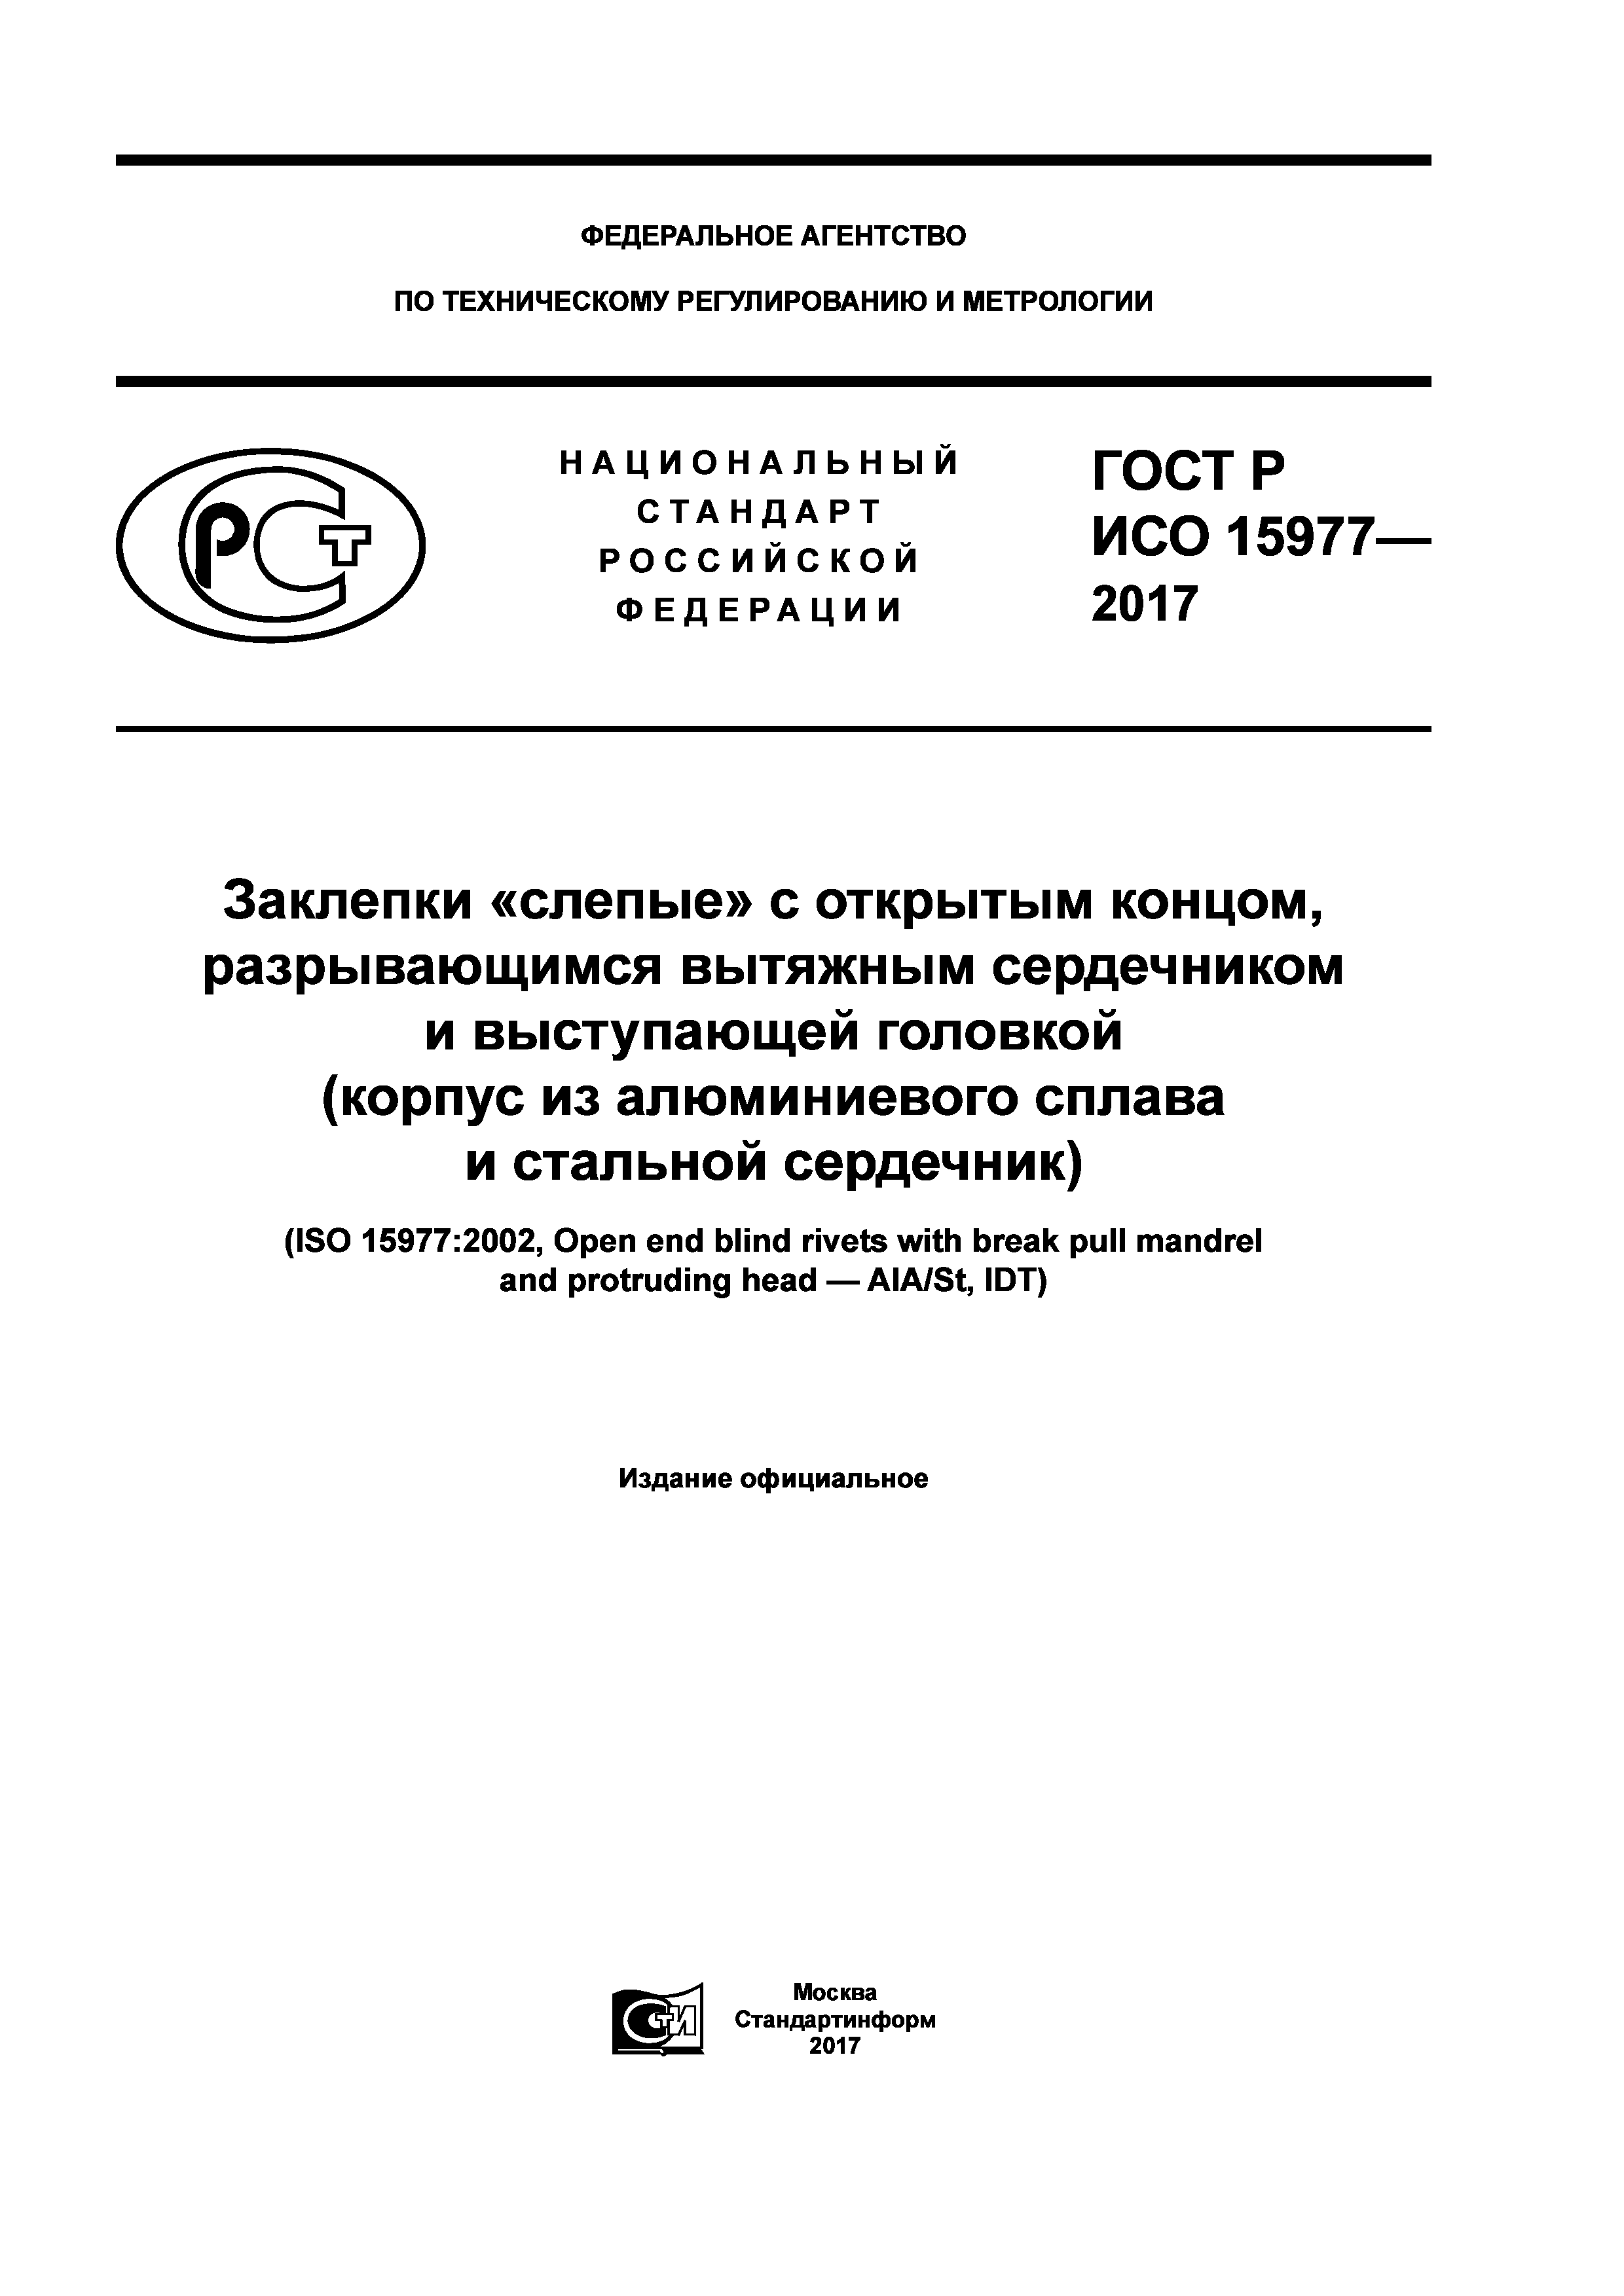 ГОСТ Р ИСО 15977-2017